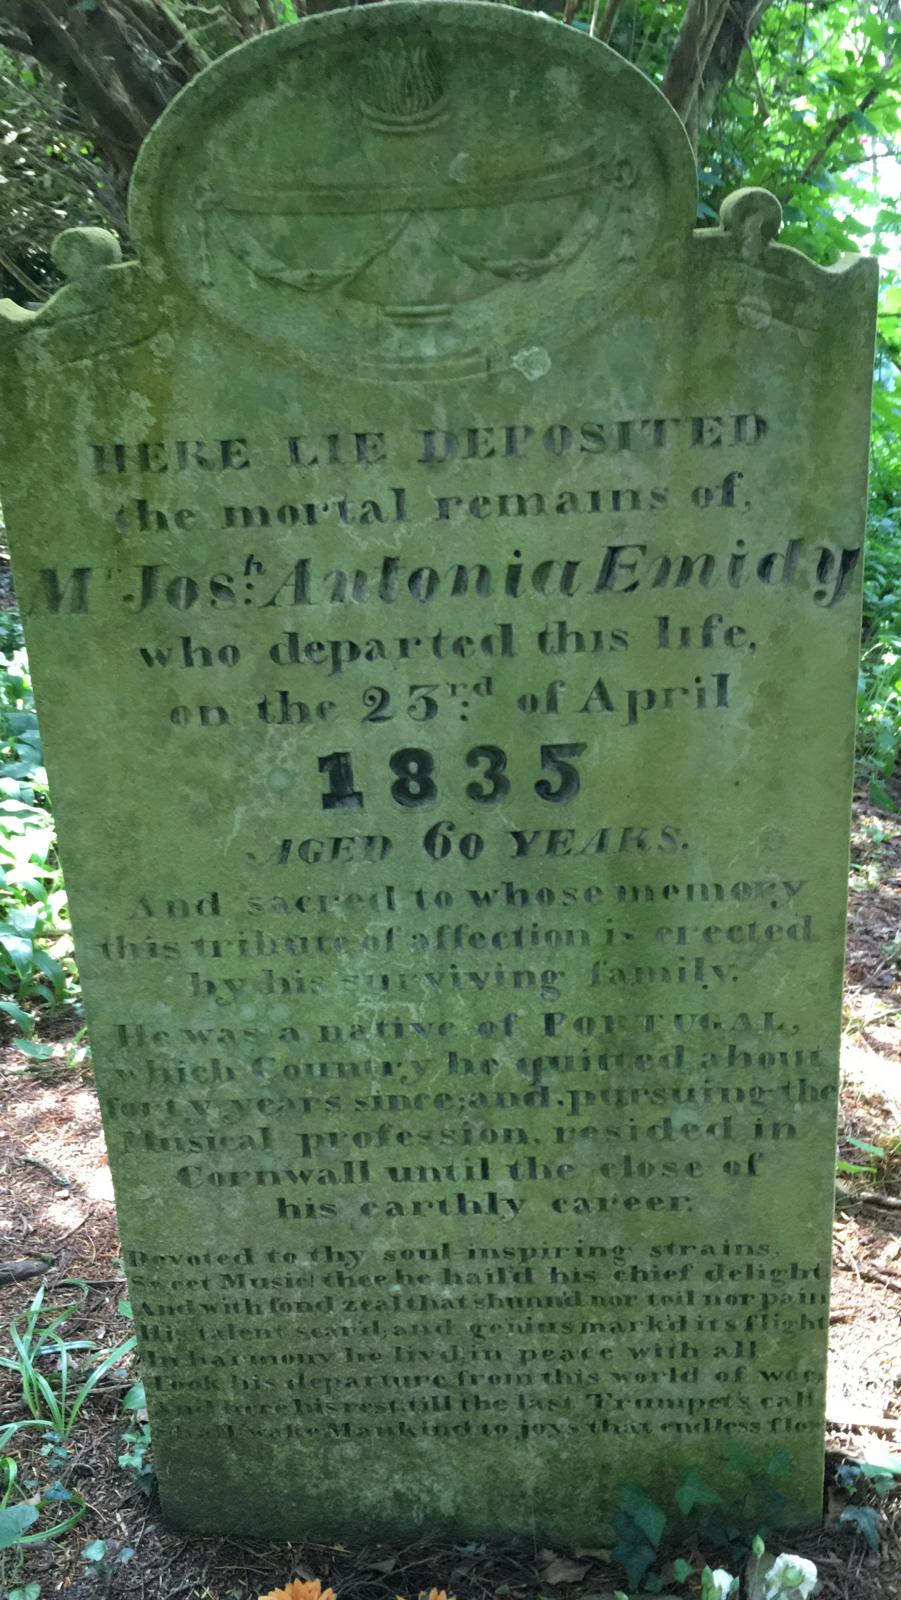 Joseph Antonio Emidy tombstone